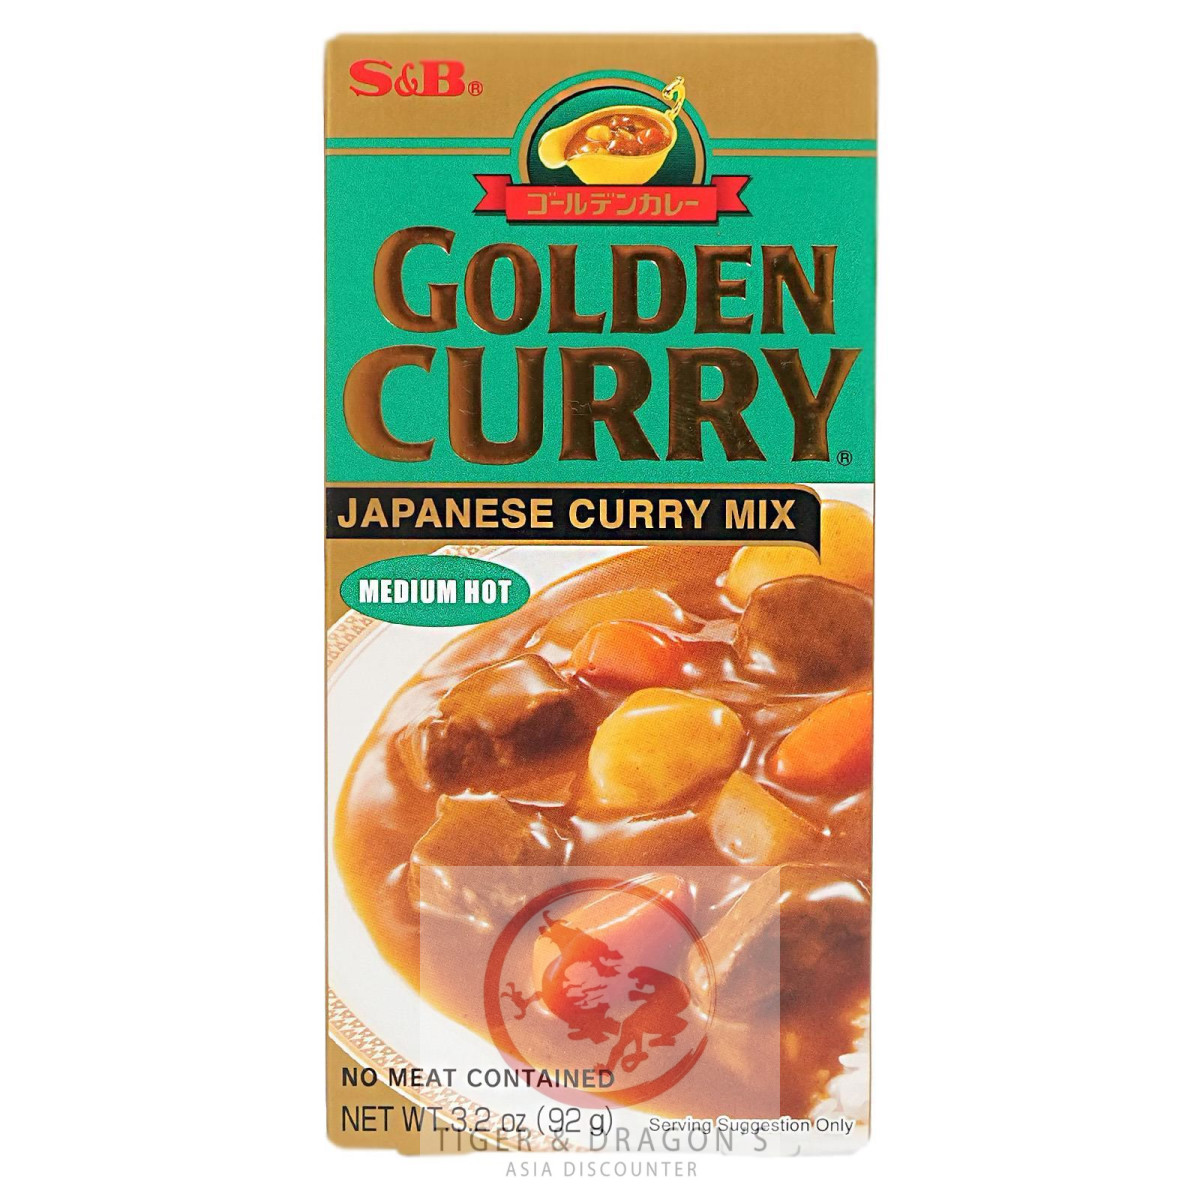 S&B Golden Curry Japanisches Curry Mix Medium Hot 12x92g